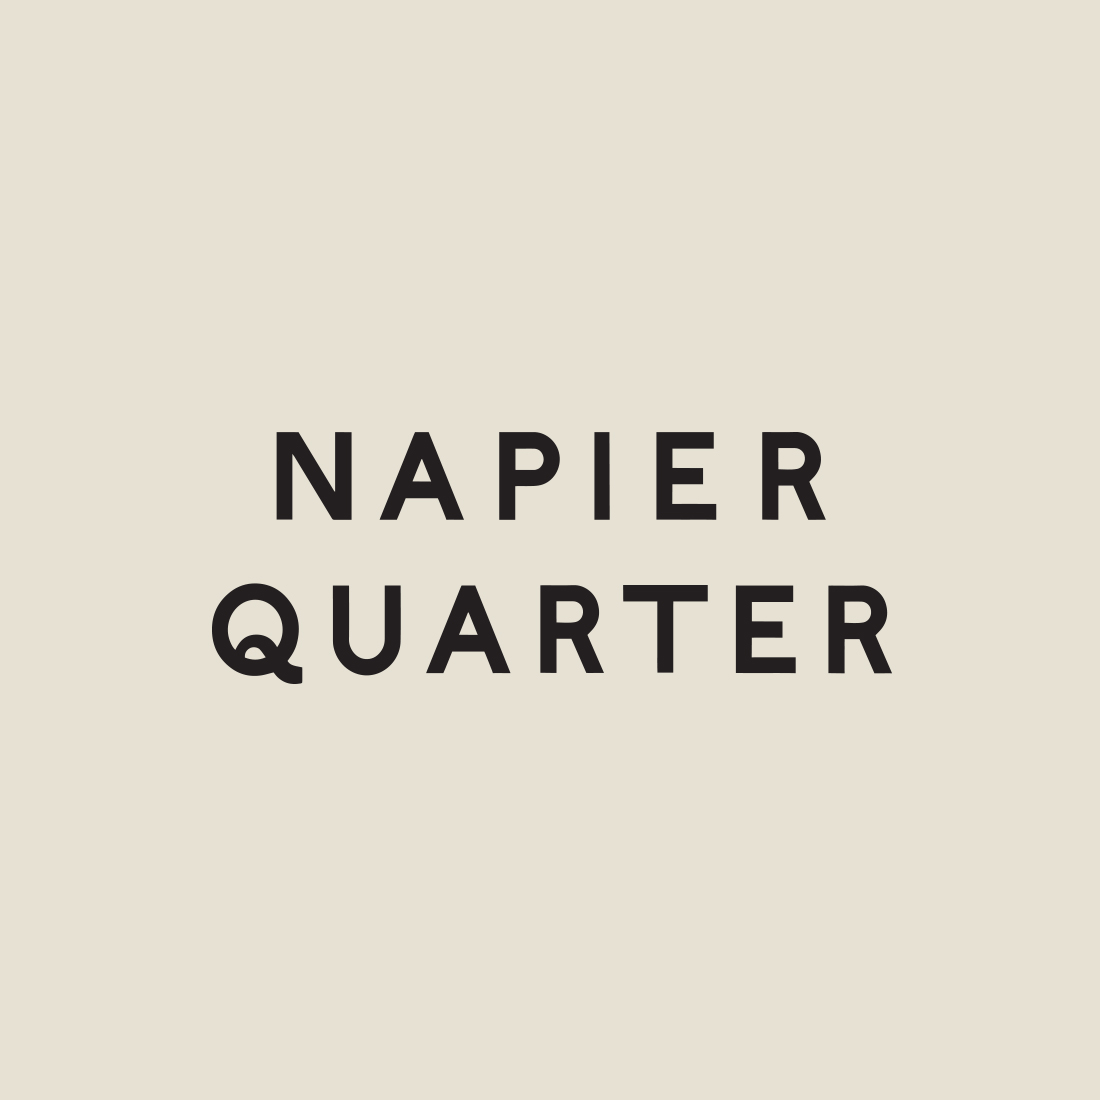 Napier Quarter